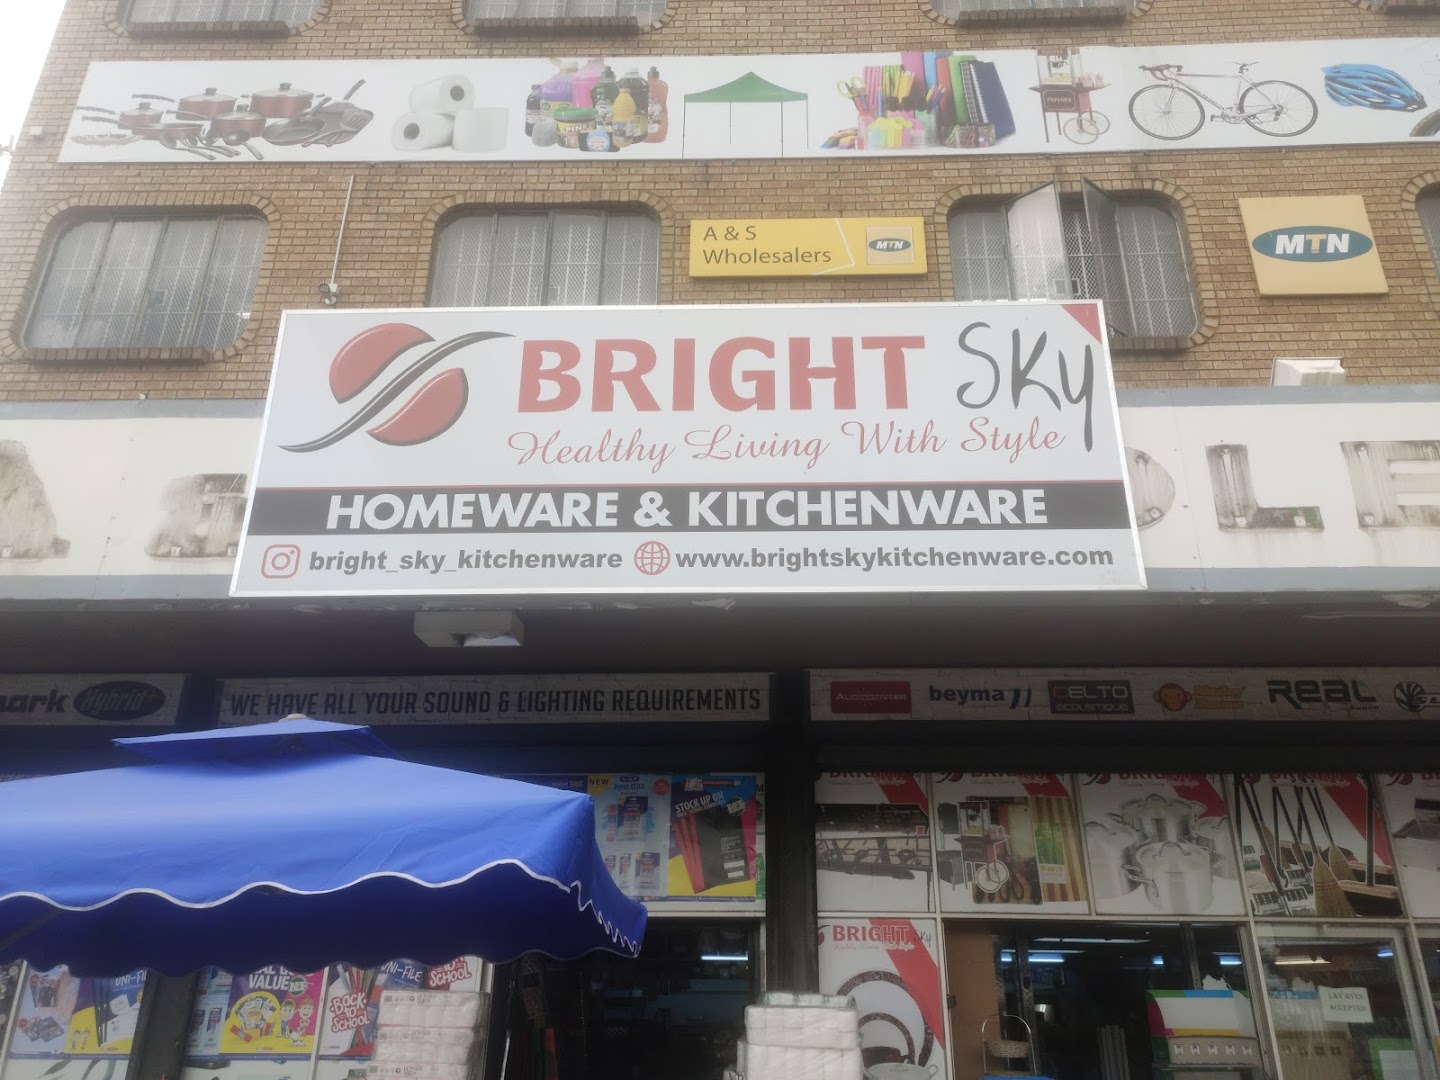 Brightsky Homeware & Kitchenware